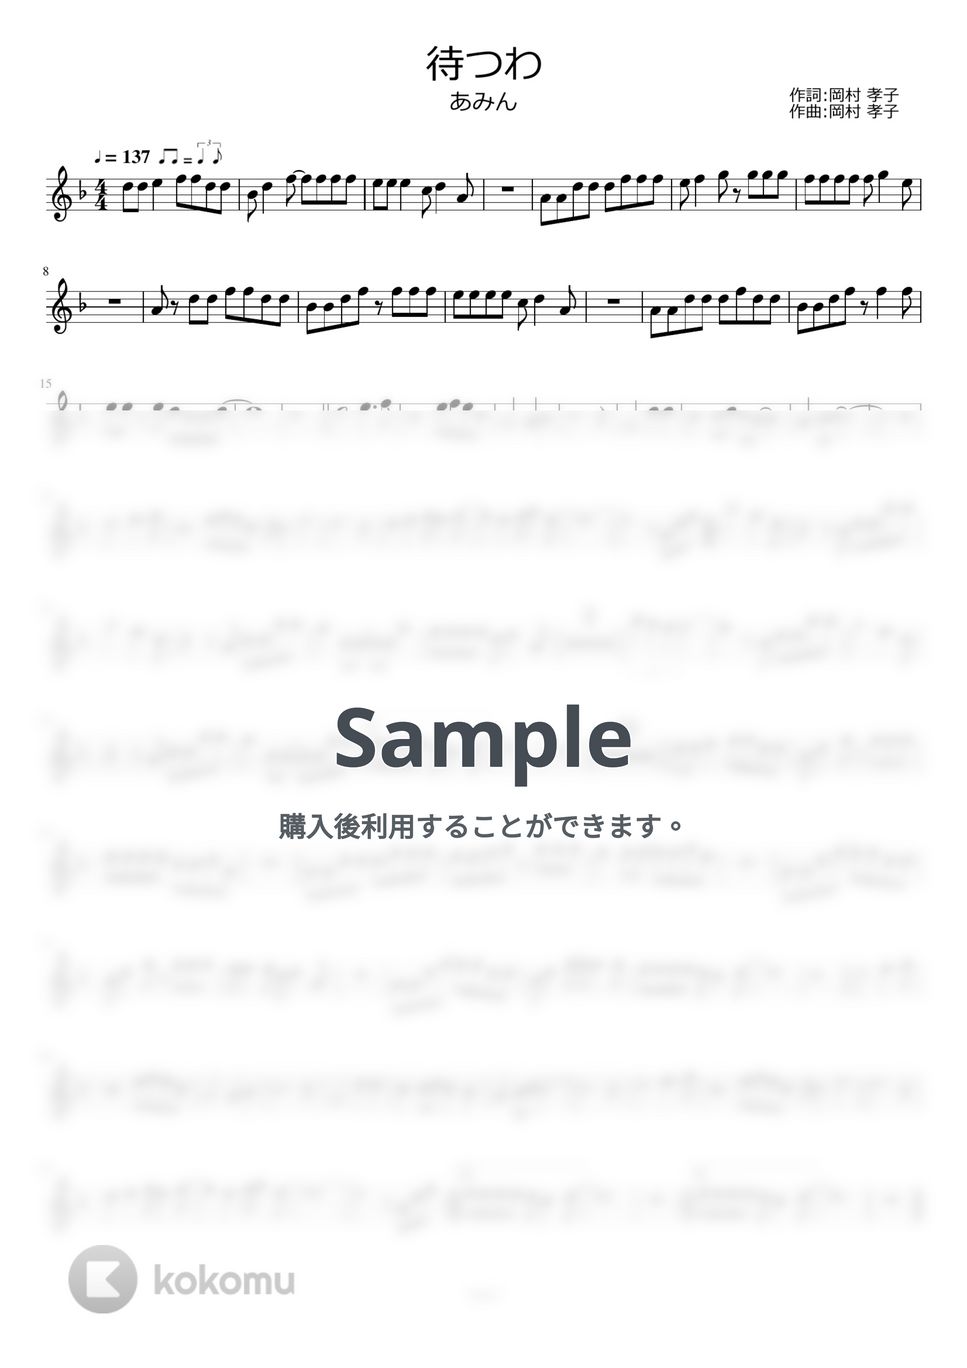 あみん - 待つわ by ayako music school